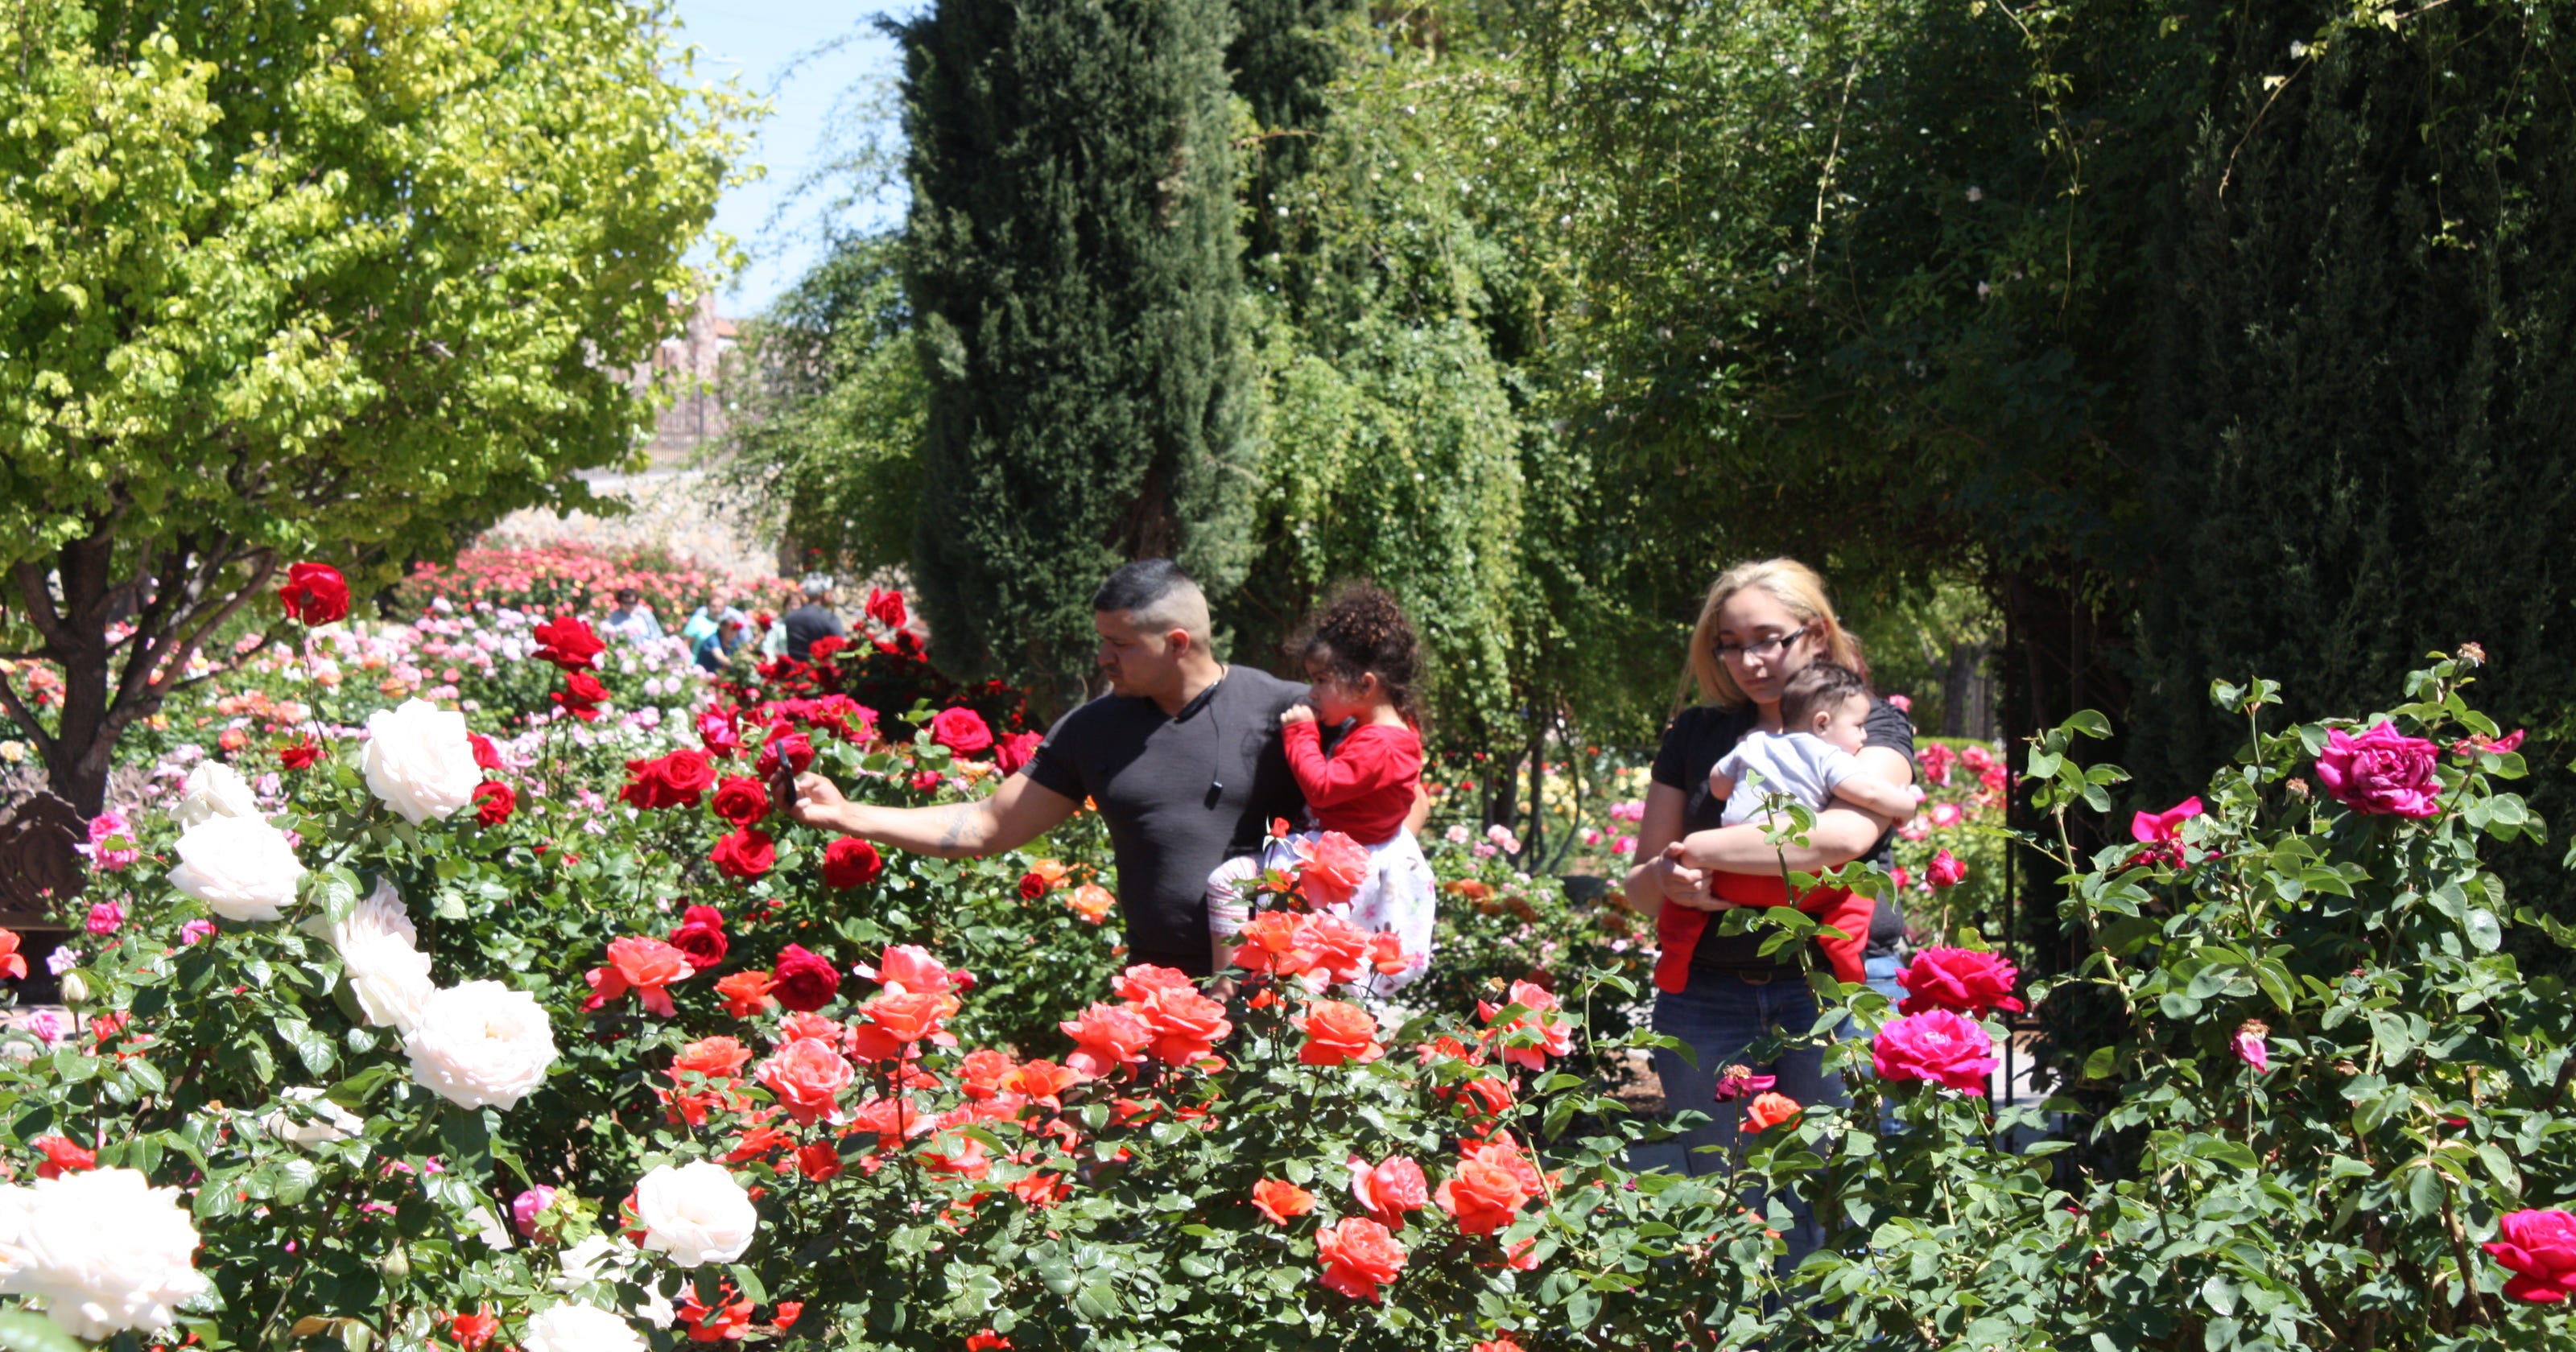 Roses In Bloom Draw Visitors To El Paso Garden